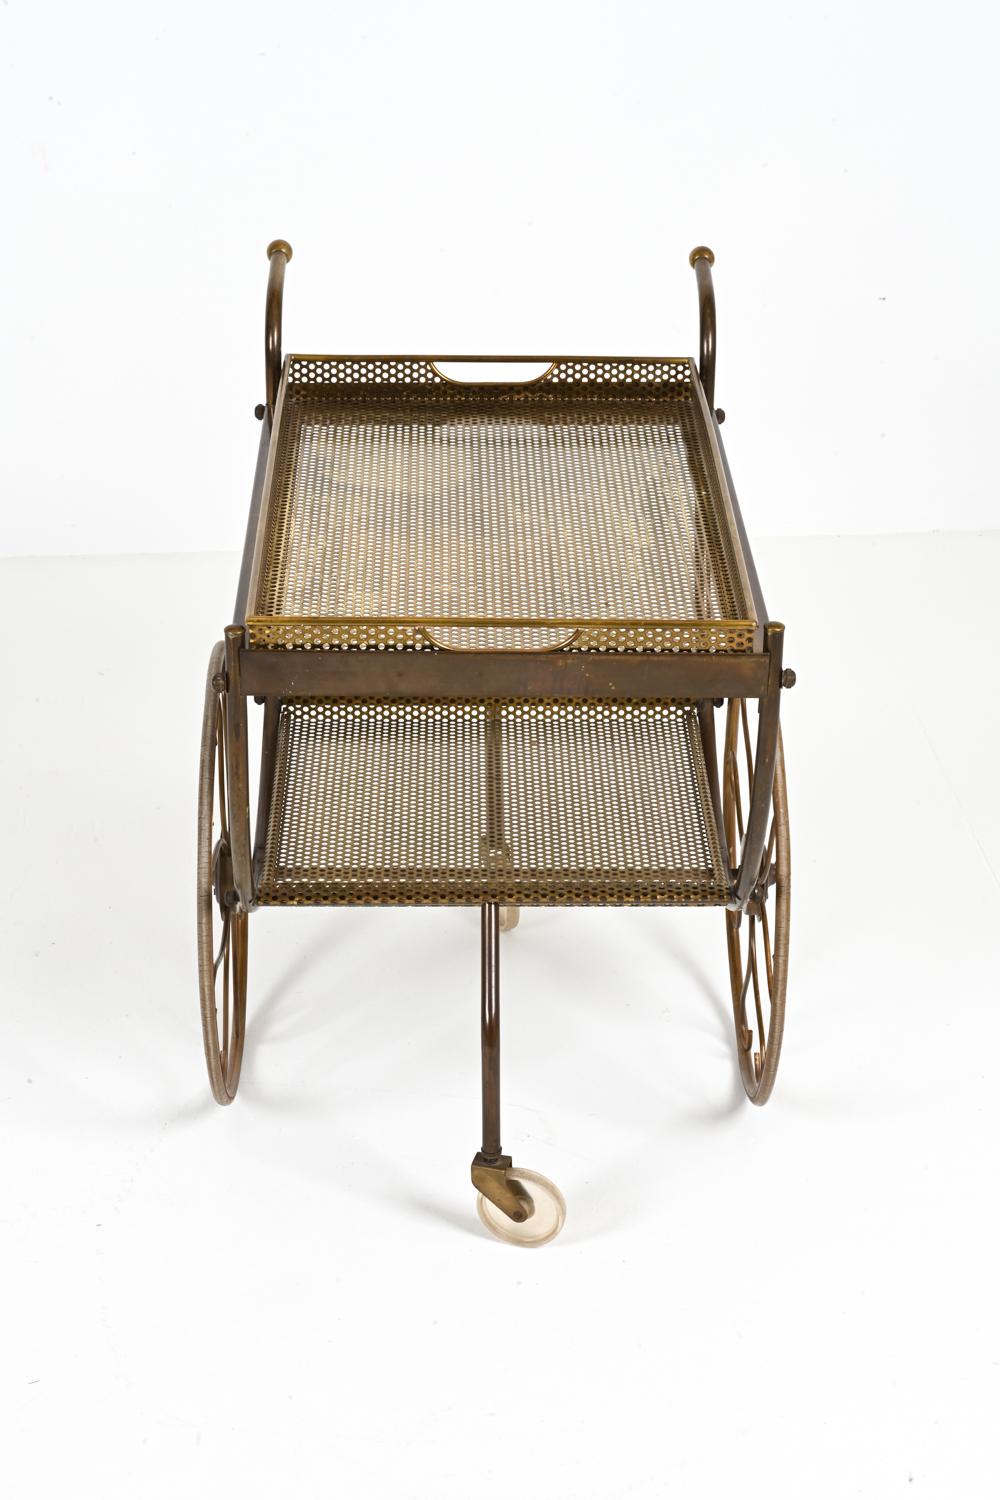 Brass Bar Cart by Josef Frank for Svenskt Tenn, c. 1950's For Sale 3